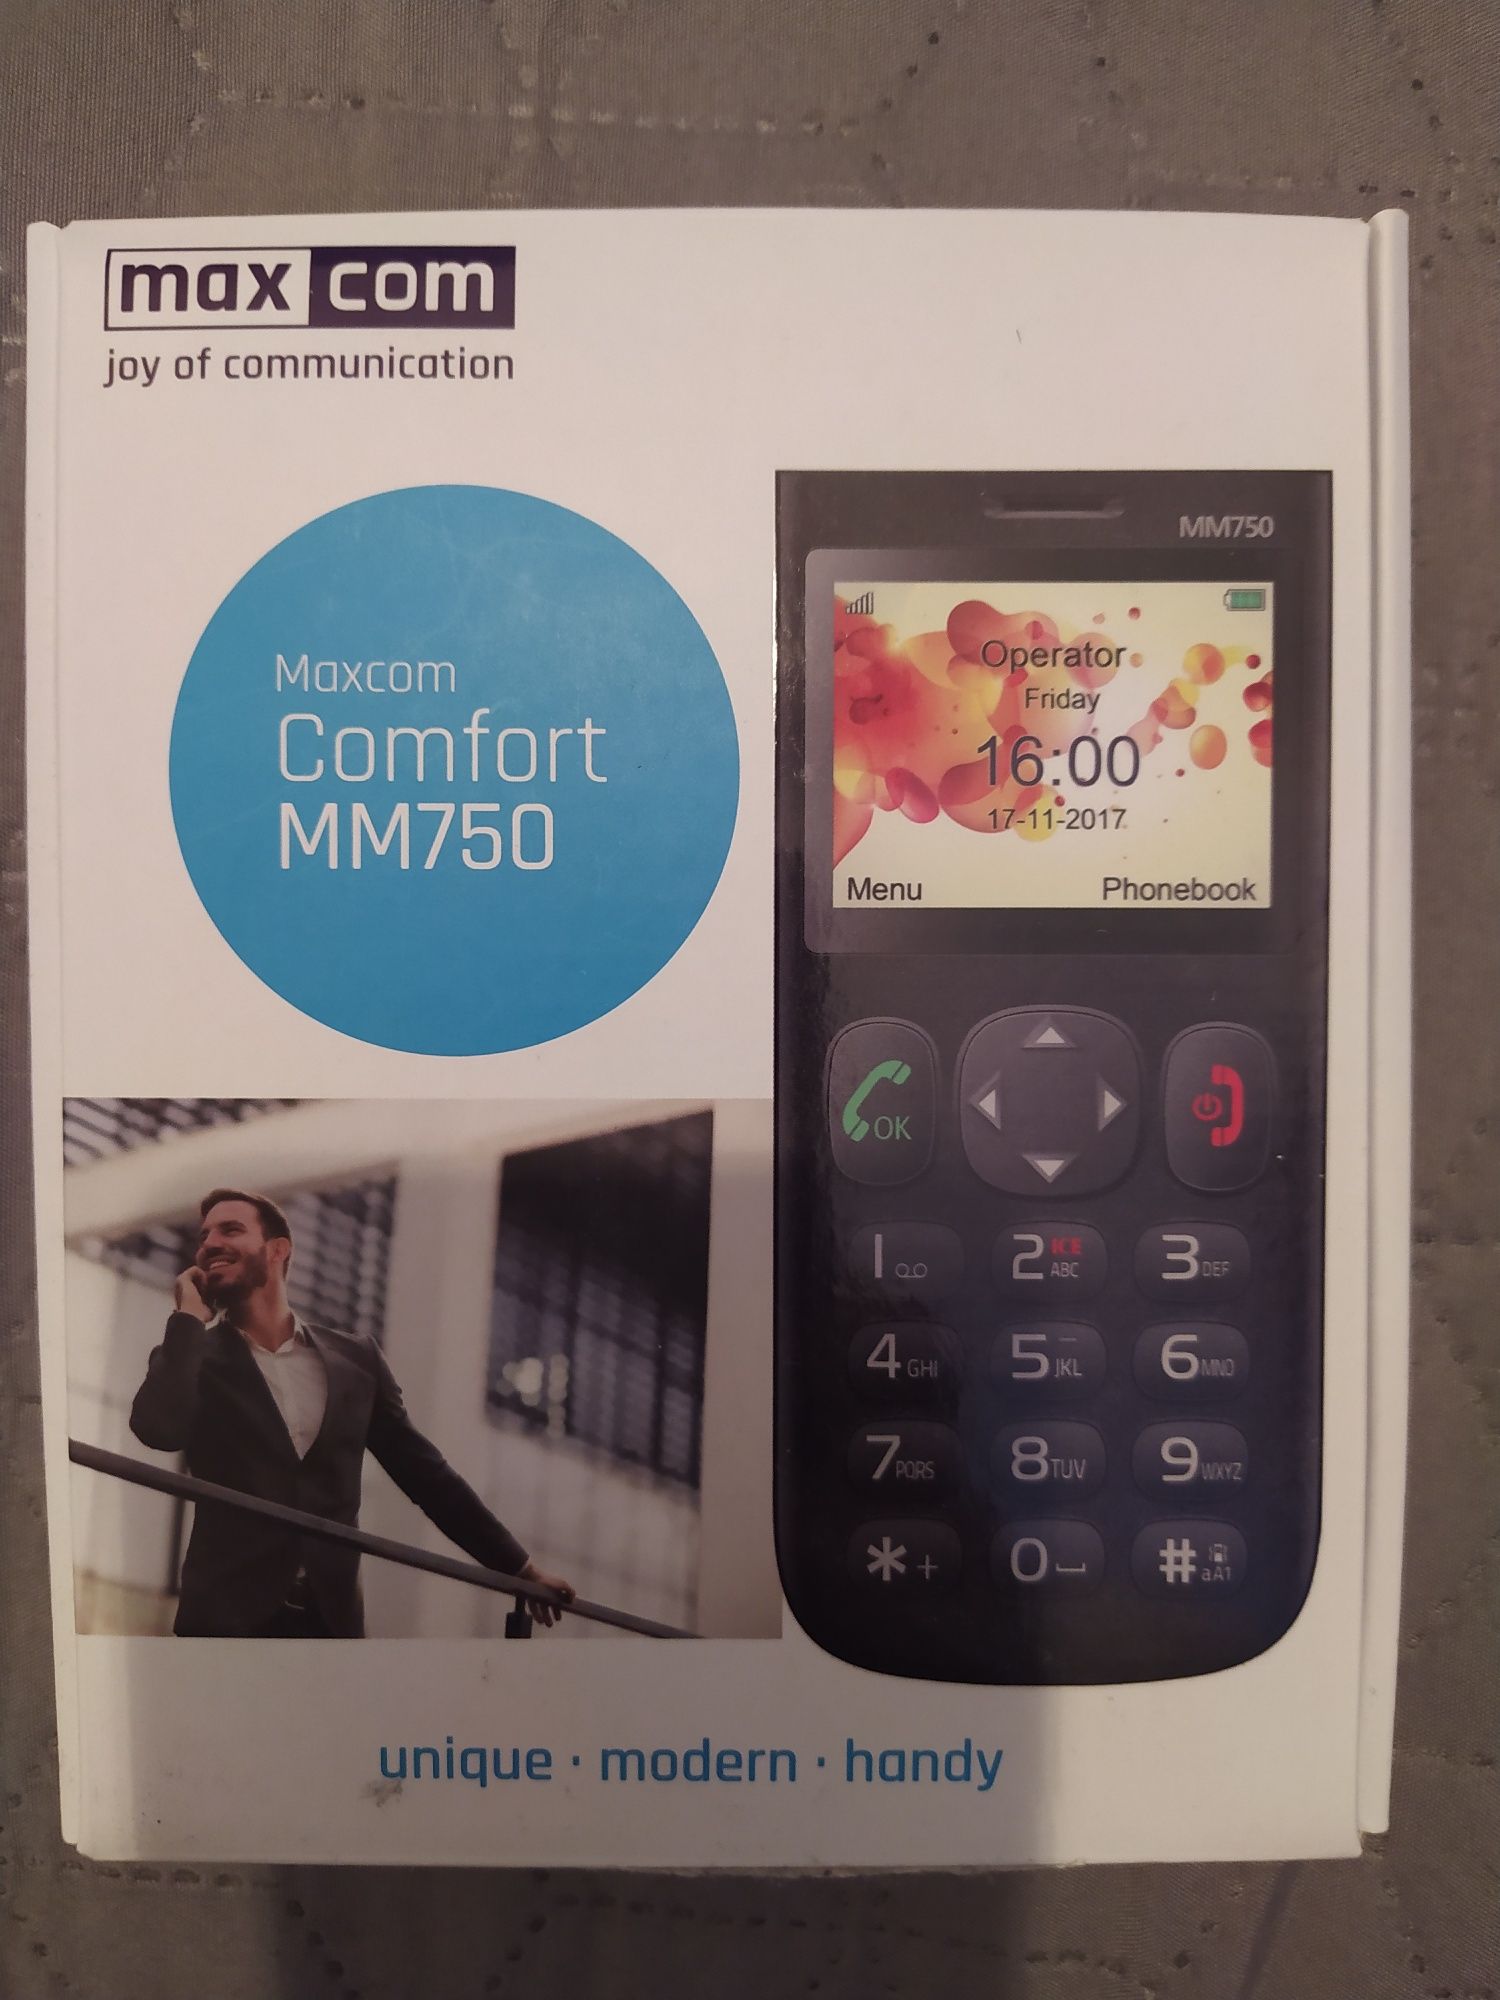 Telefon Maxcom MM750 nowy - idealny dla starszych osób